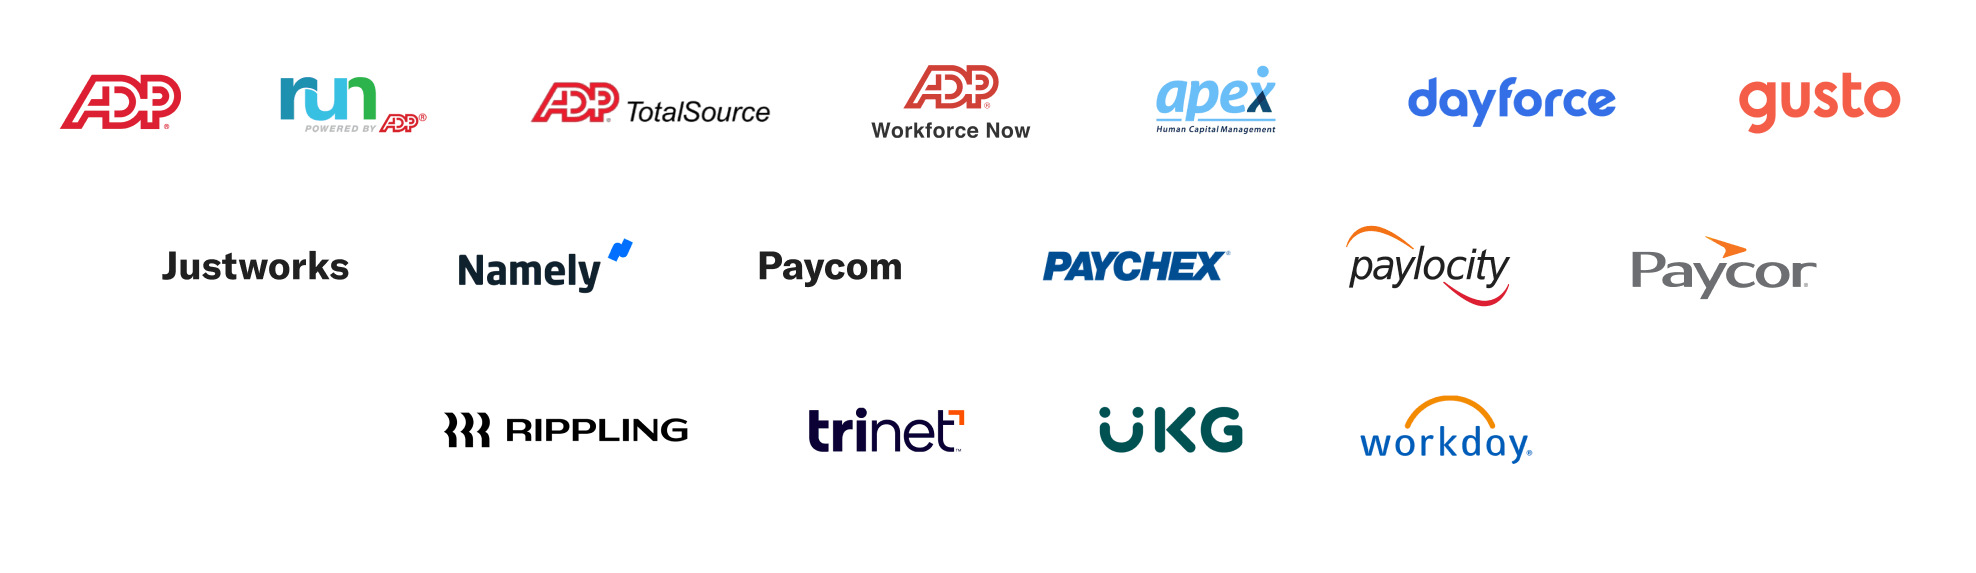 logos-payroll-integrations-2